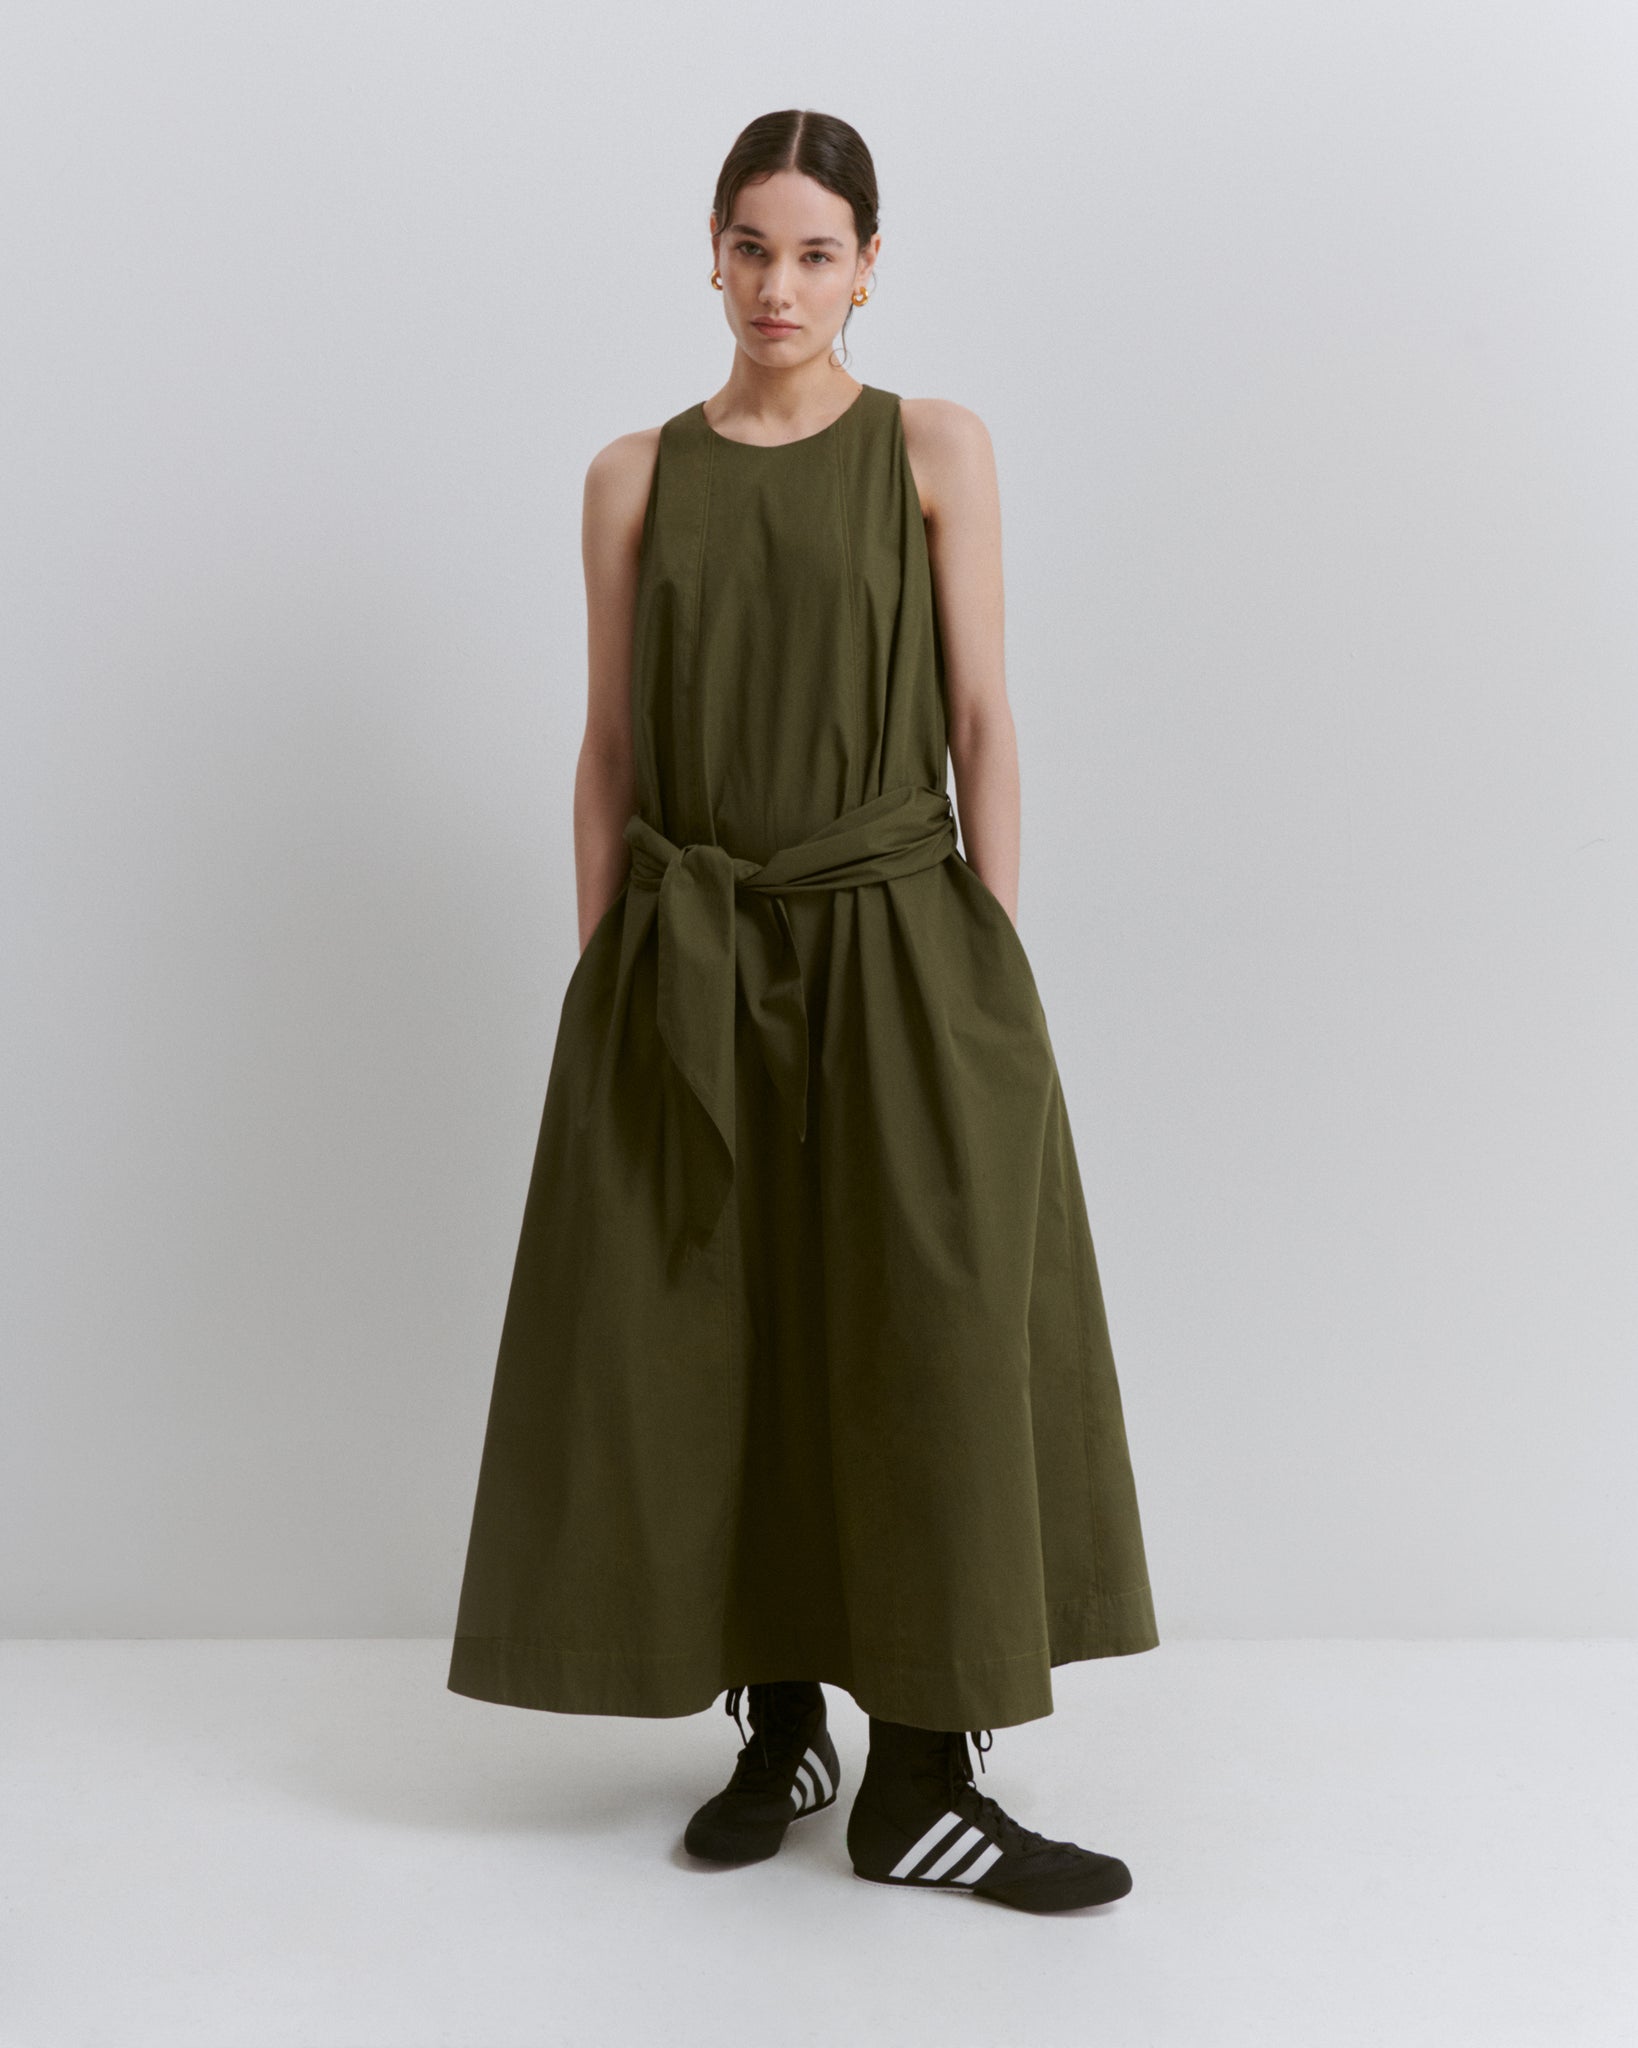 model wears Issue Twelve green cotton a-line dress